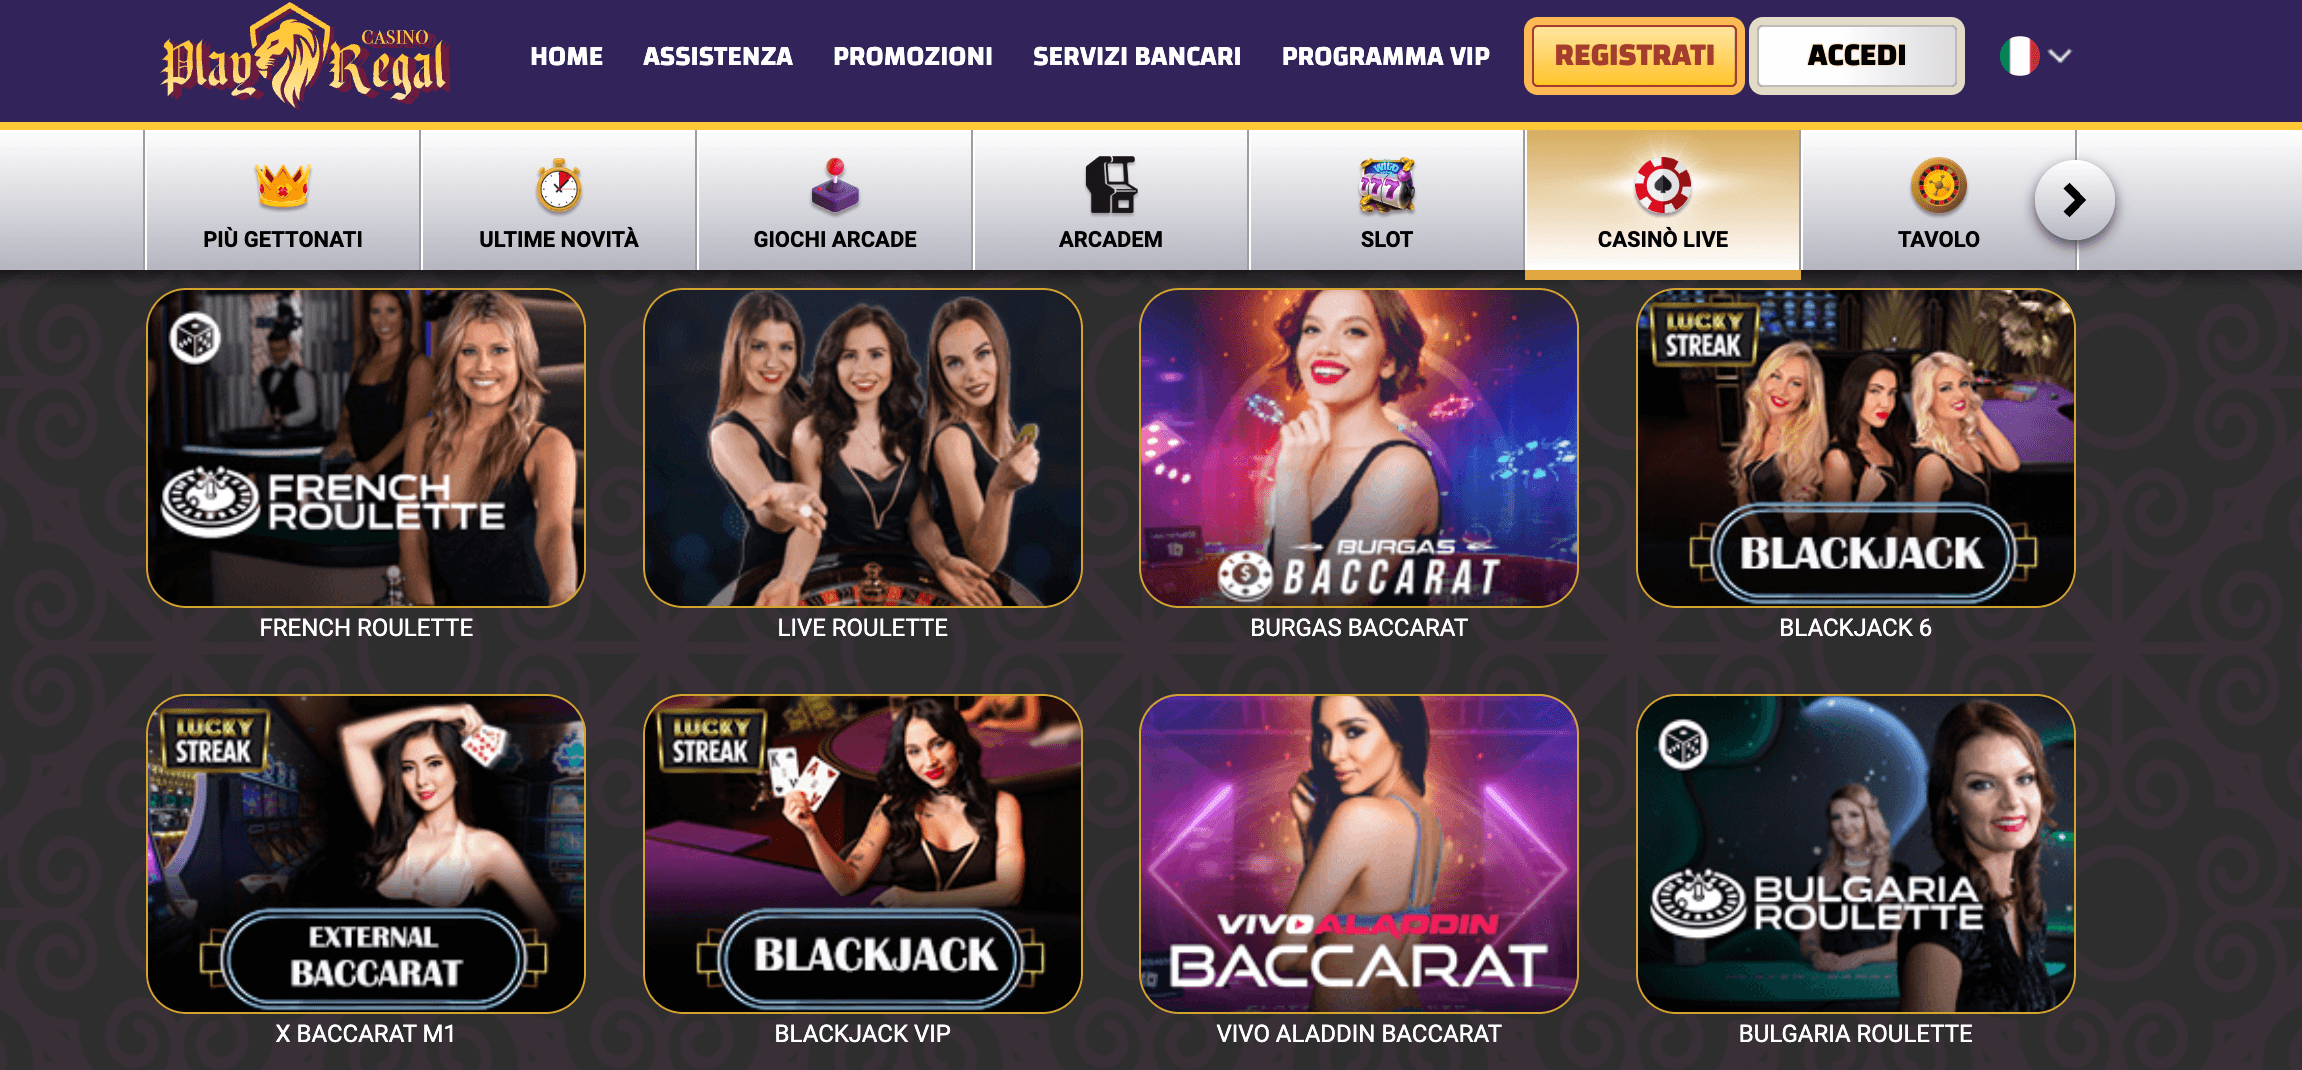 Playregal Casino Slot Live